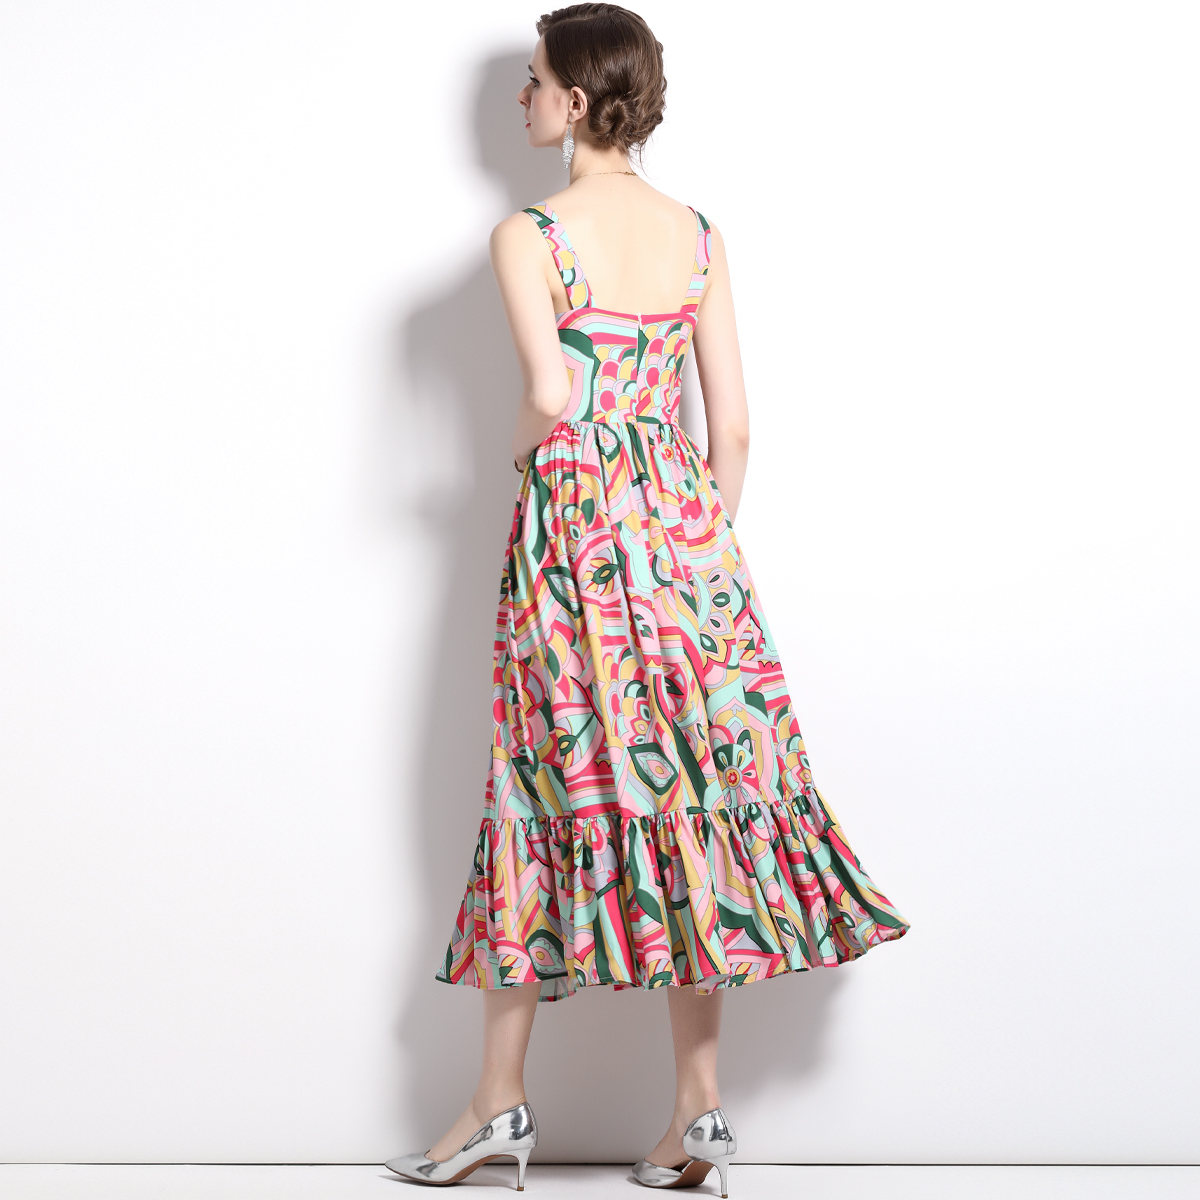 Catwalk slim long dress sling dress for women